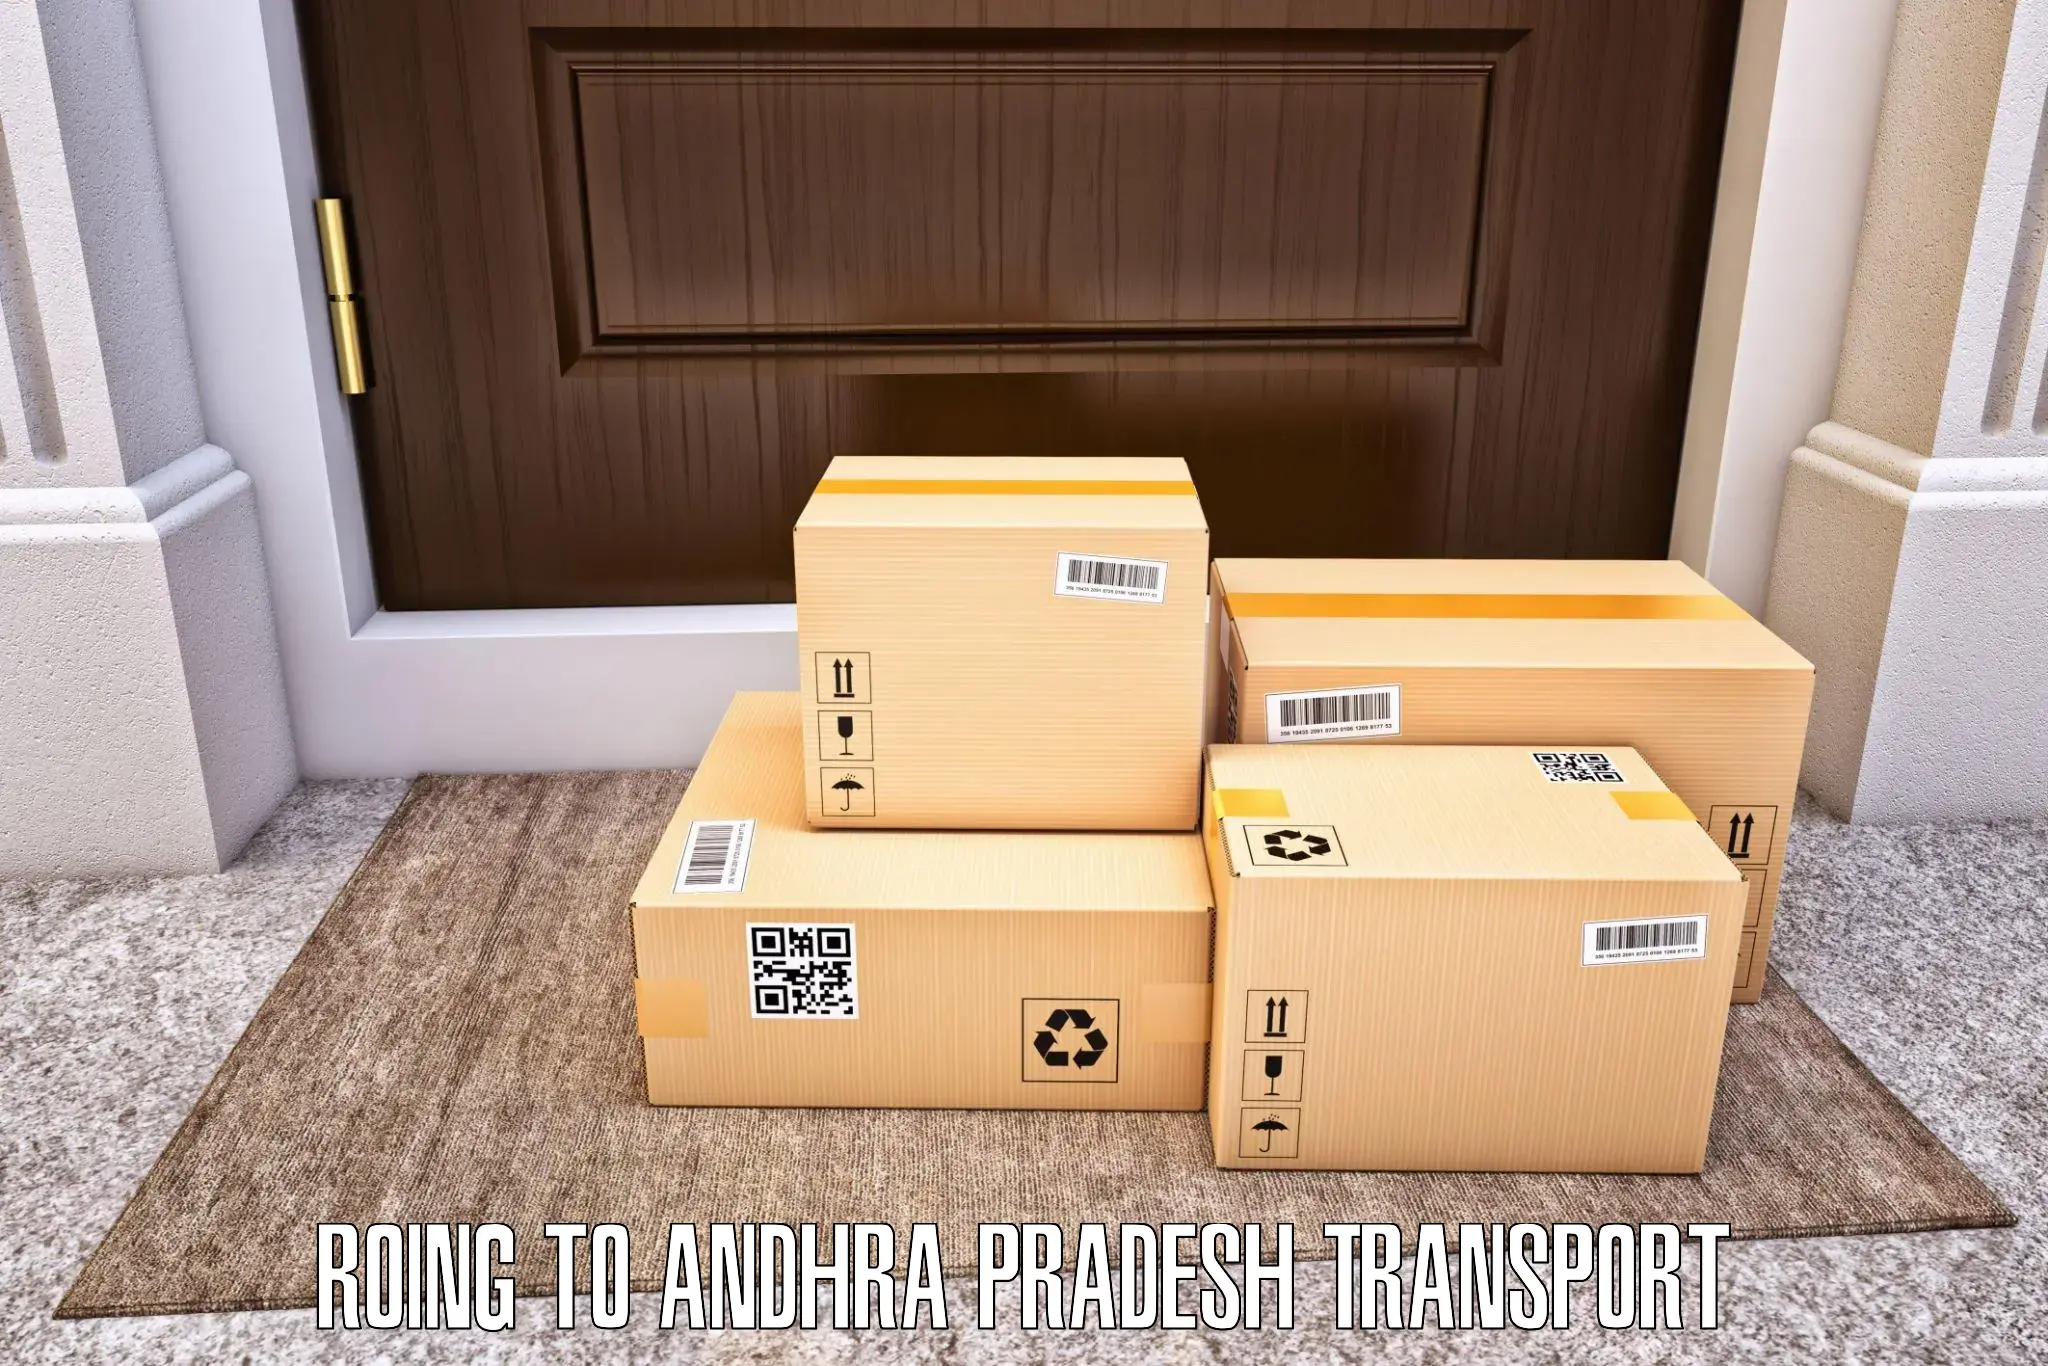 Furniture transport service Roing to NIT Andhra Pradesh